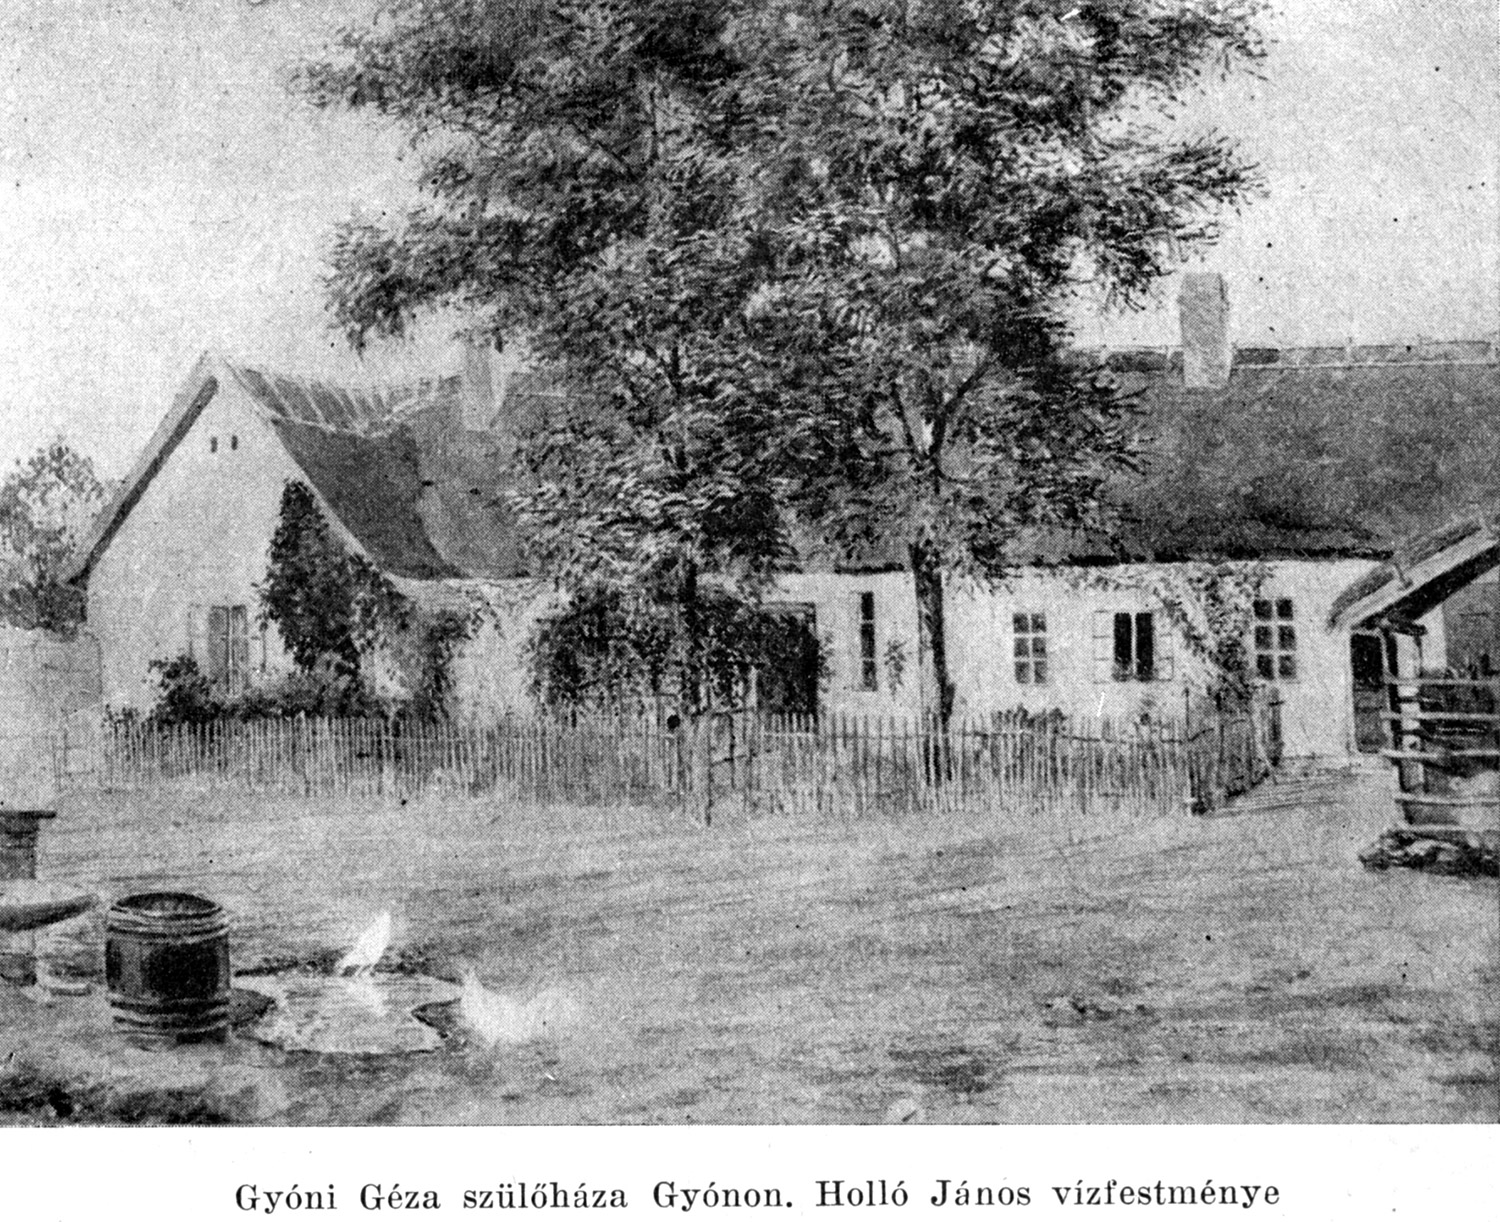 Holló János vízfestménye Gyóni Géza szülőházáról